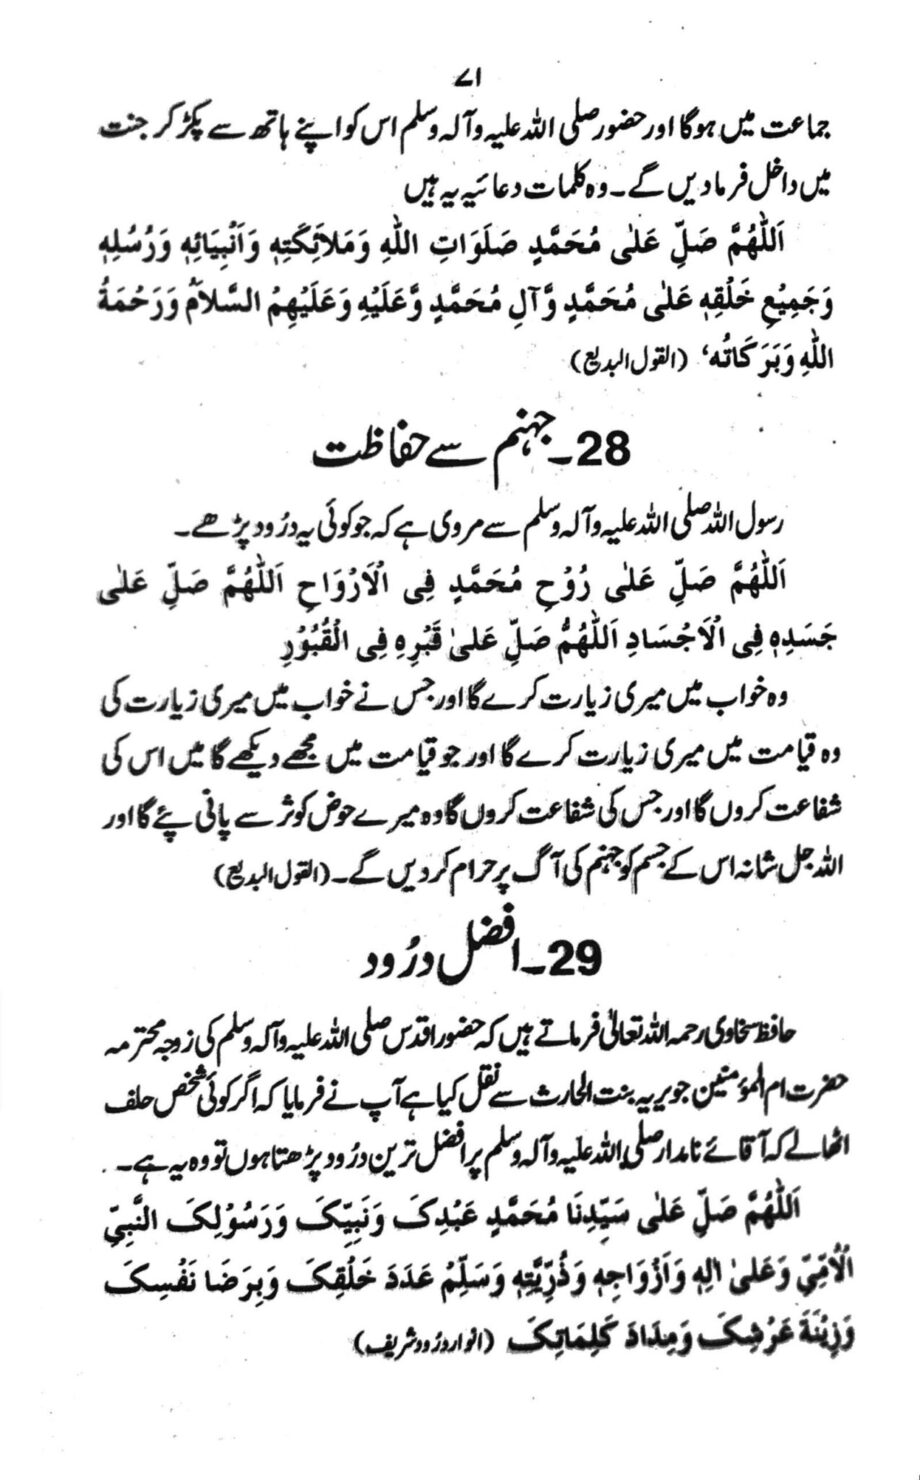 Durood urdu book on kitab farosh